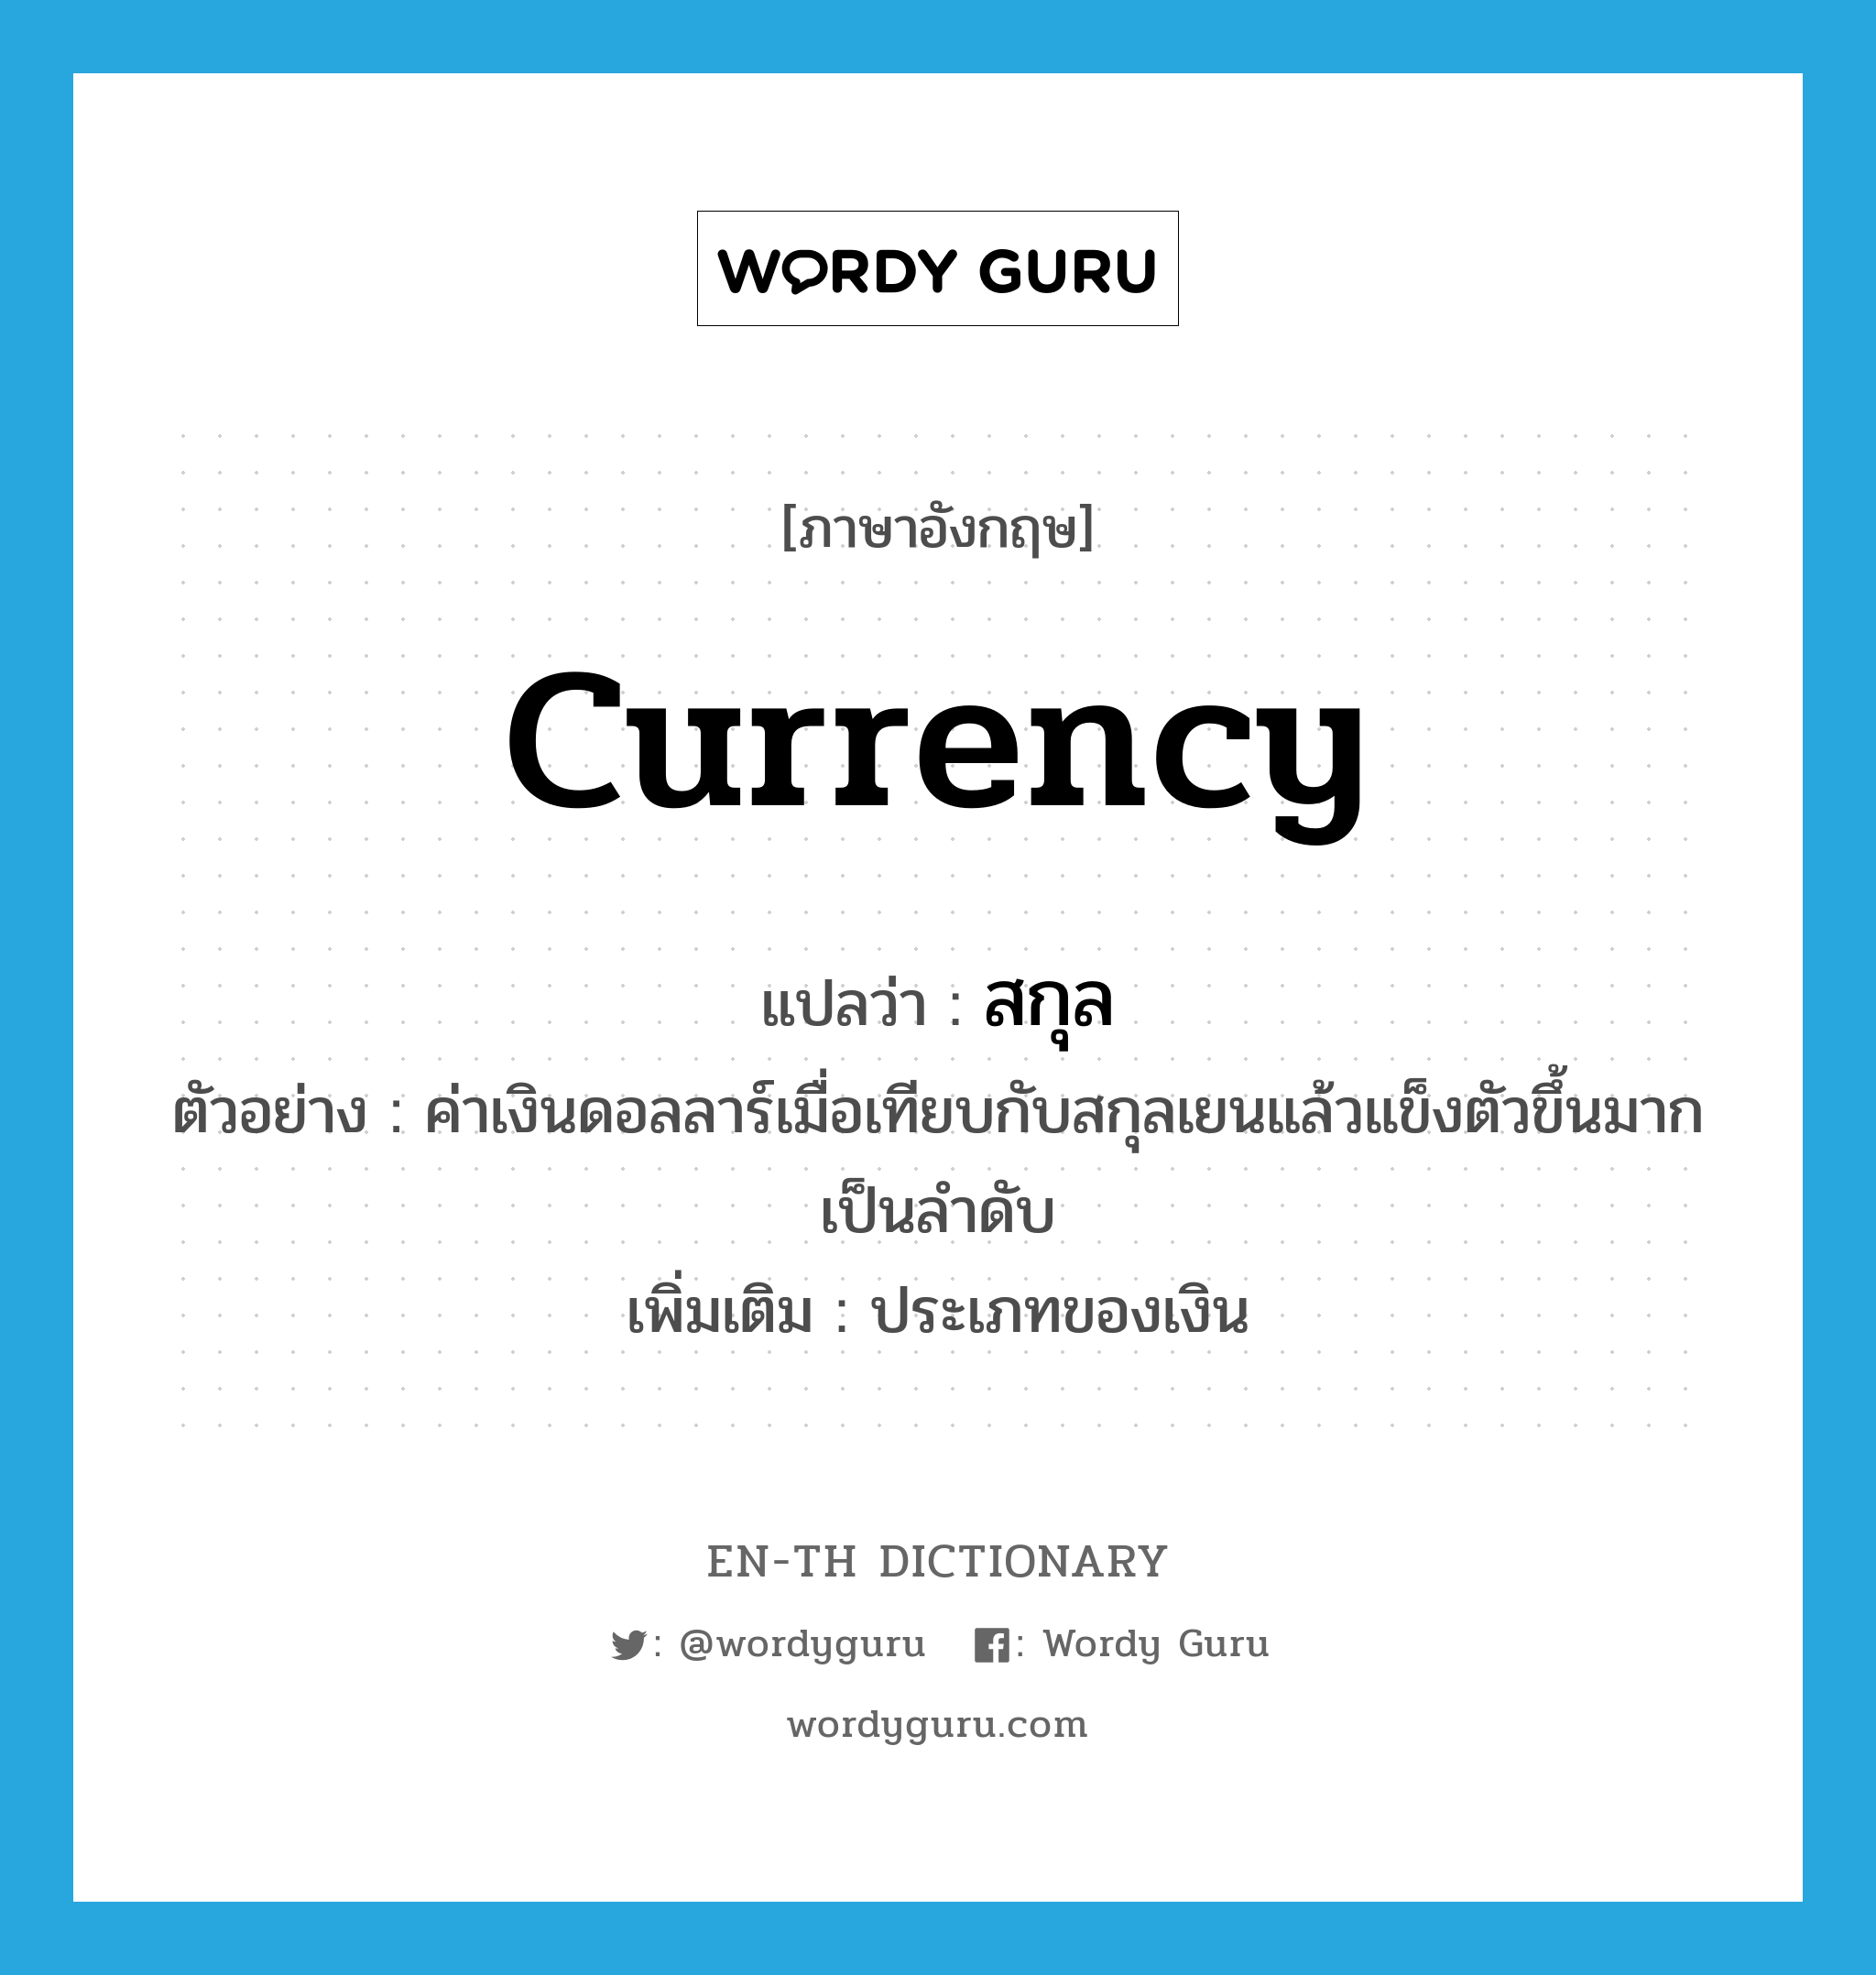 currency แปลว่า?, คำศัพท์ภาษาอังกฤษ currency แปลว่า สกุล ประเภท N ตัวอย่าง ค่าเงินดอลลาร์เมื่อเทียบกับสกุลเยนแล้วแข็งตัวขึ้นมากเป็นลำดับ เพิ่มเติม ประเภทของเงิน หมวด N